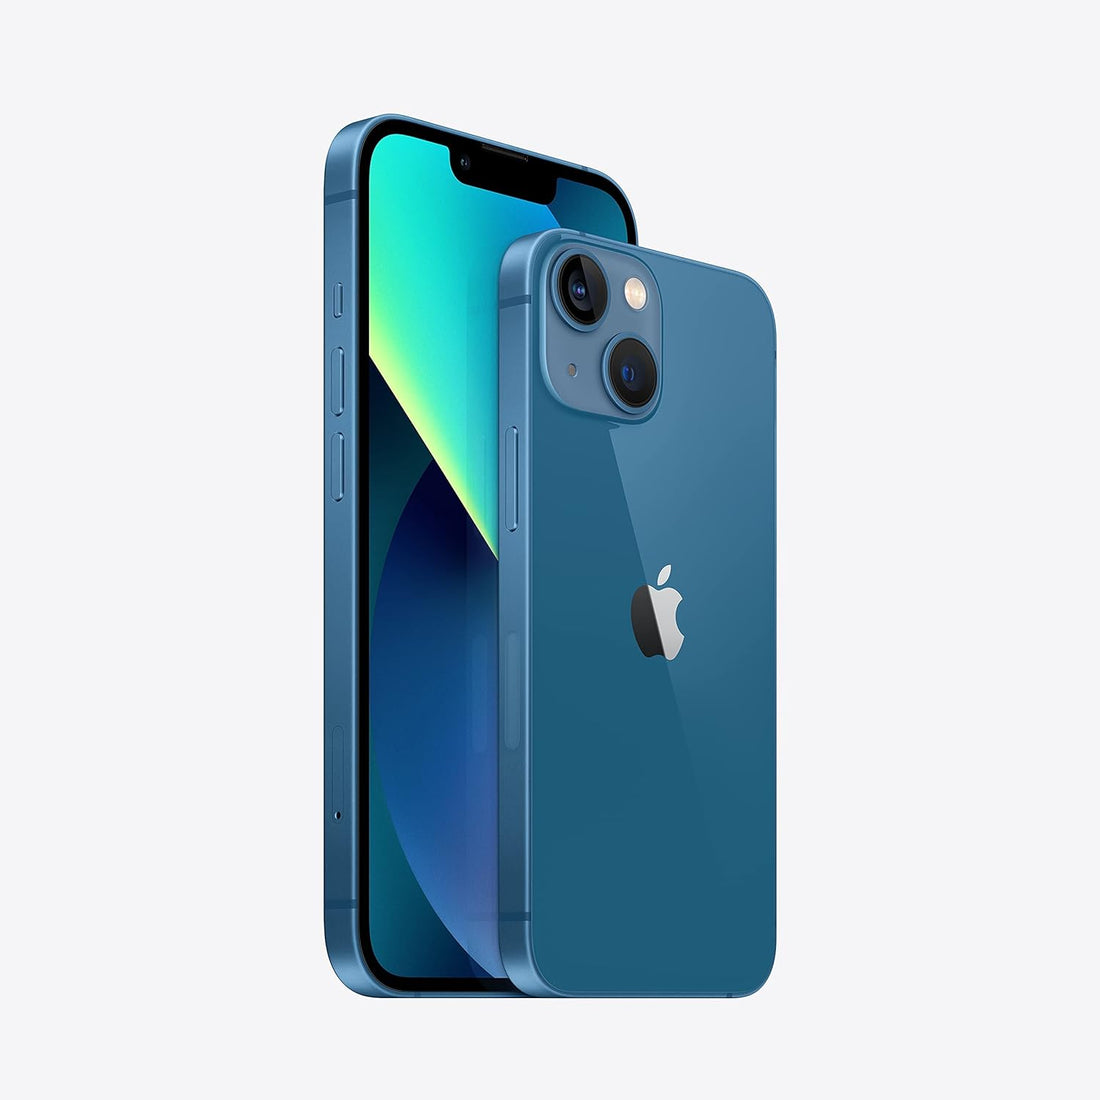 Apple iPhone 13 - 256GB (Unlocked) - Blue (Used)